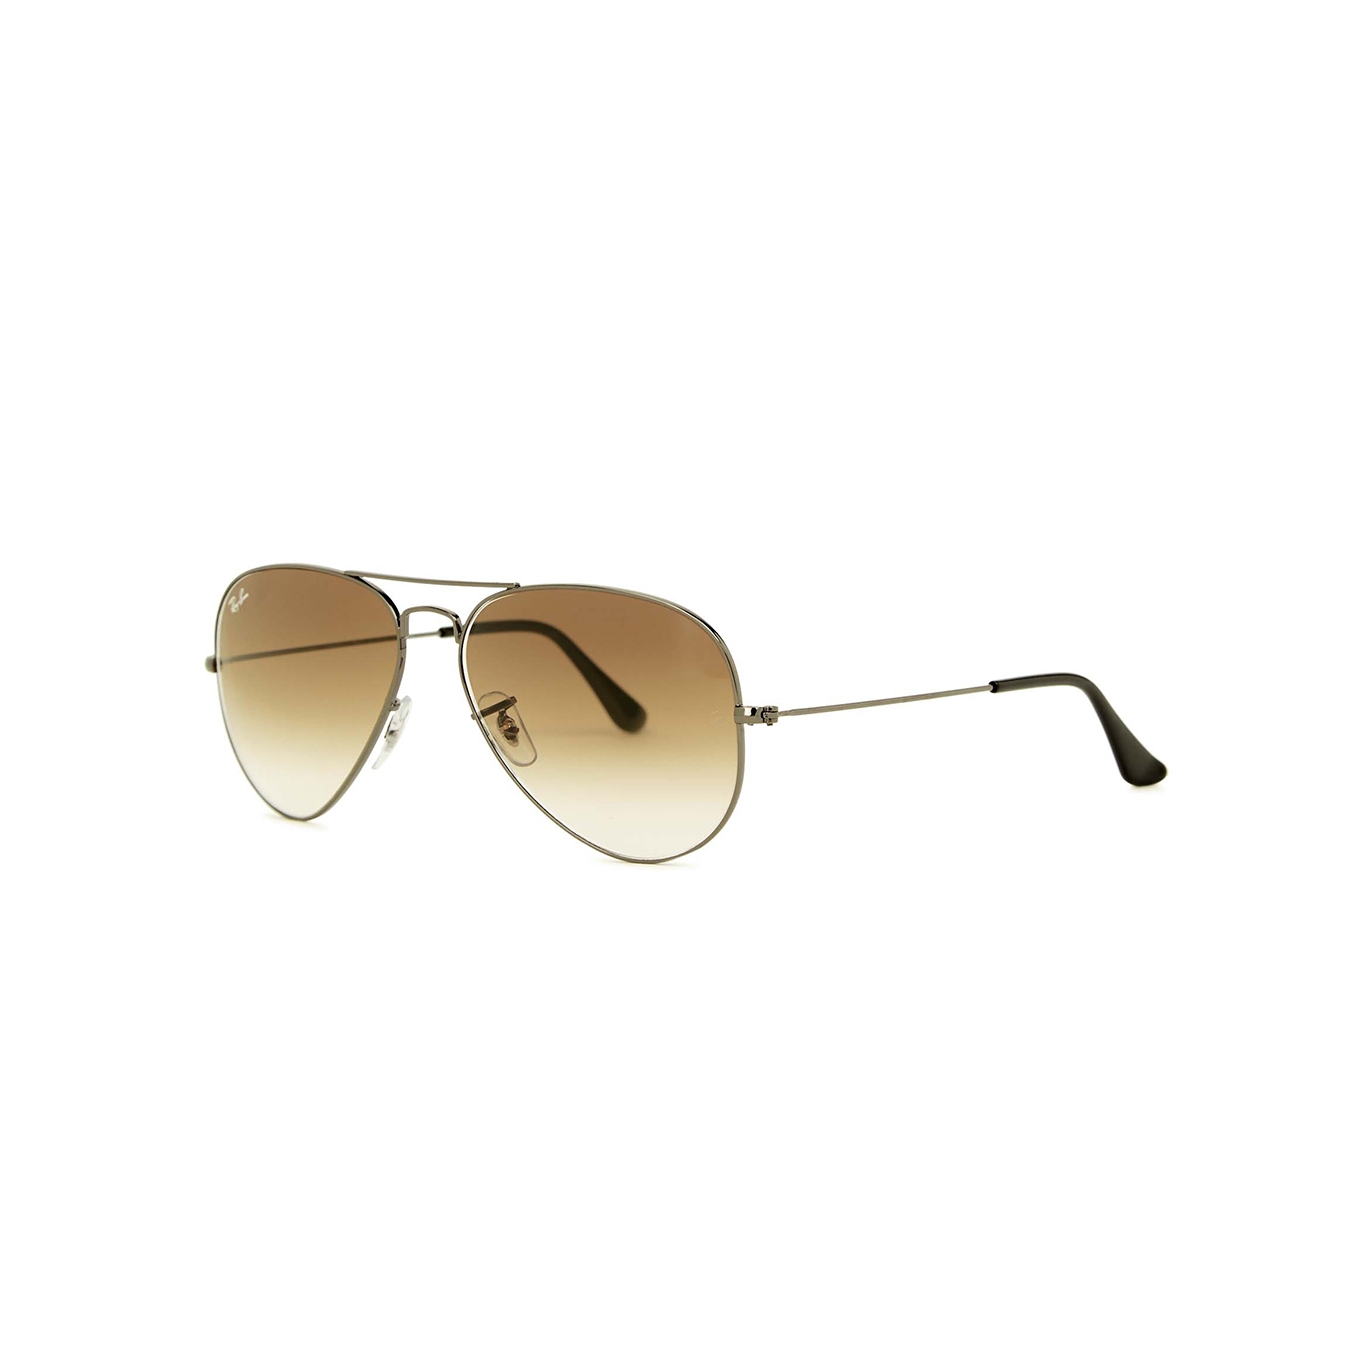 Ray-Ban Gunmetal Aviator Sunglasses, Sunglasses, Brown Lenses